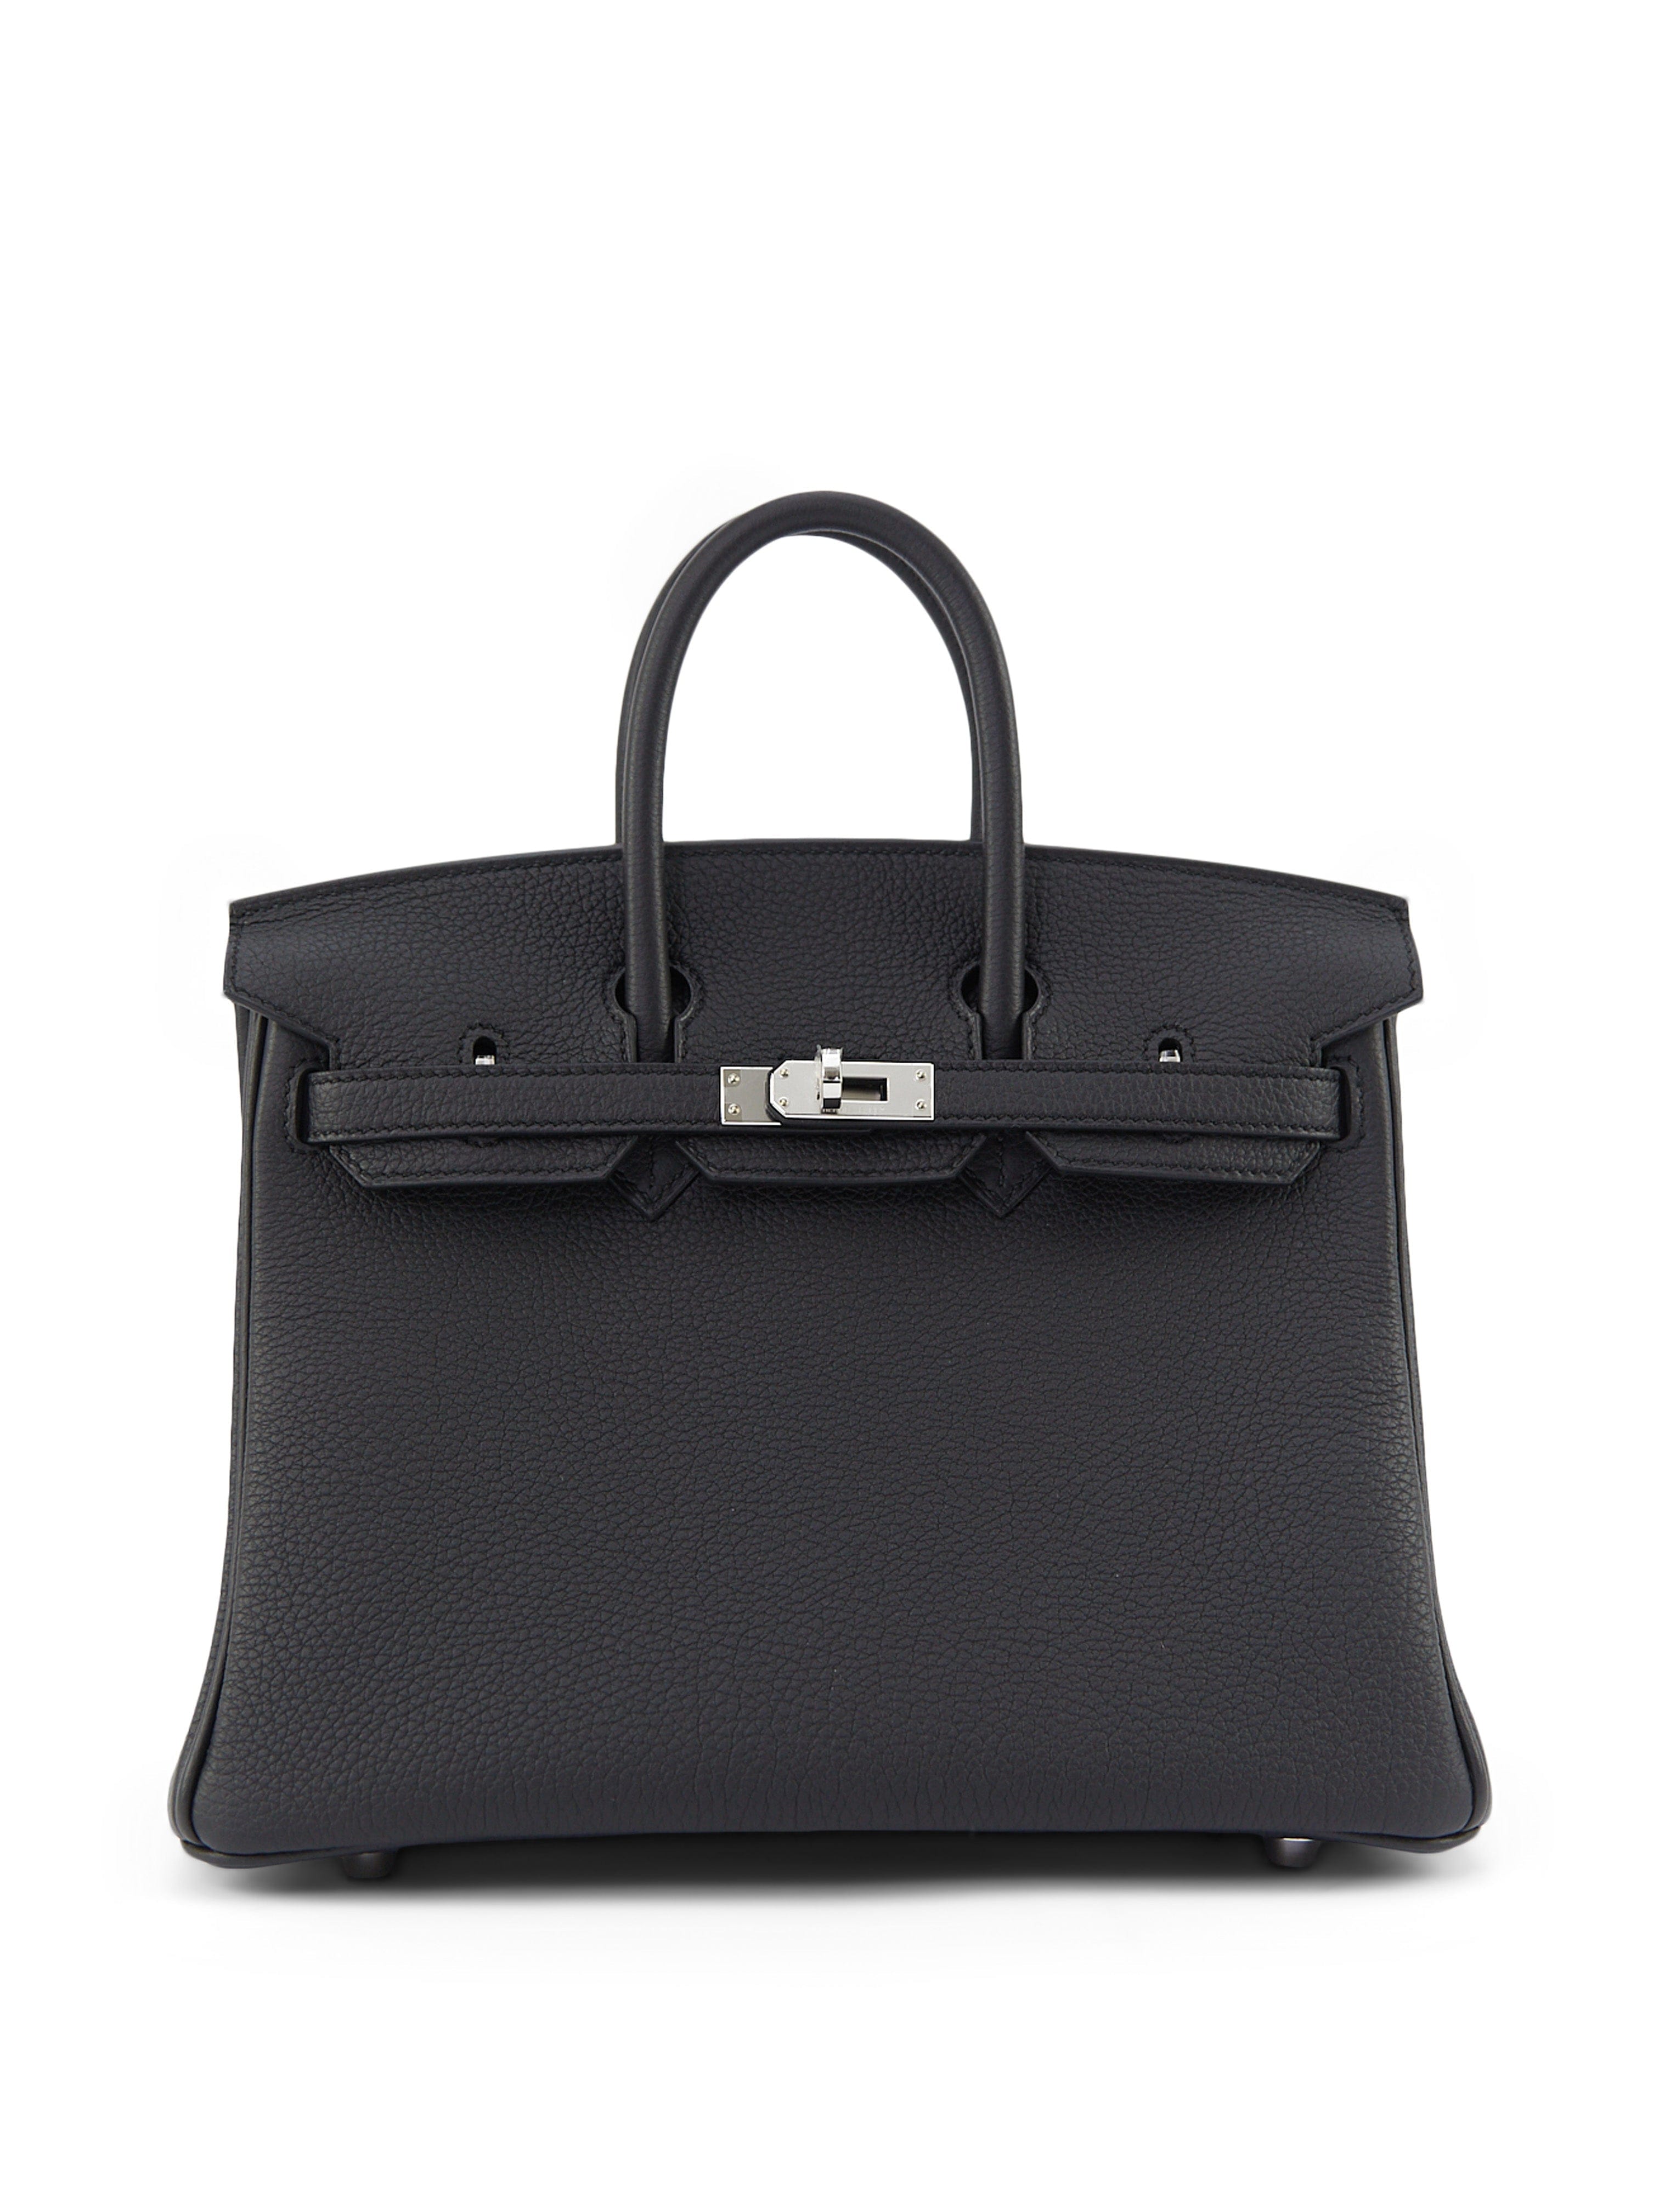 LuxuryVault HERMÈS BIRKIN 25CM BLACK Togo Leather with Palladium Hardware